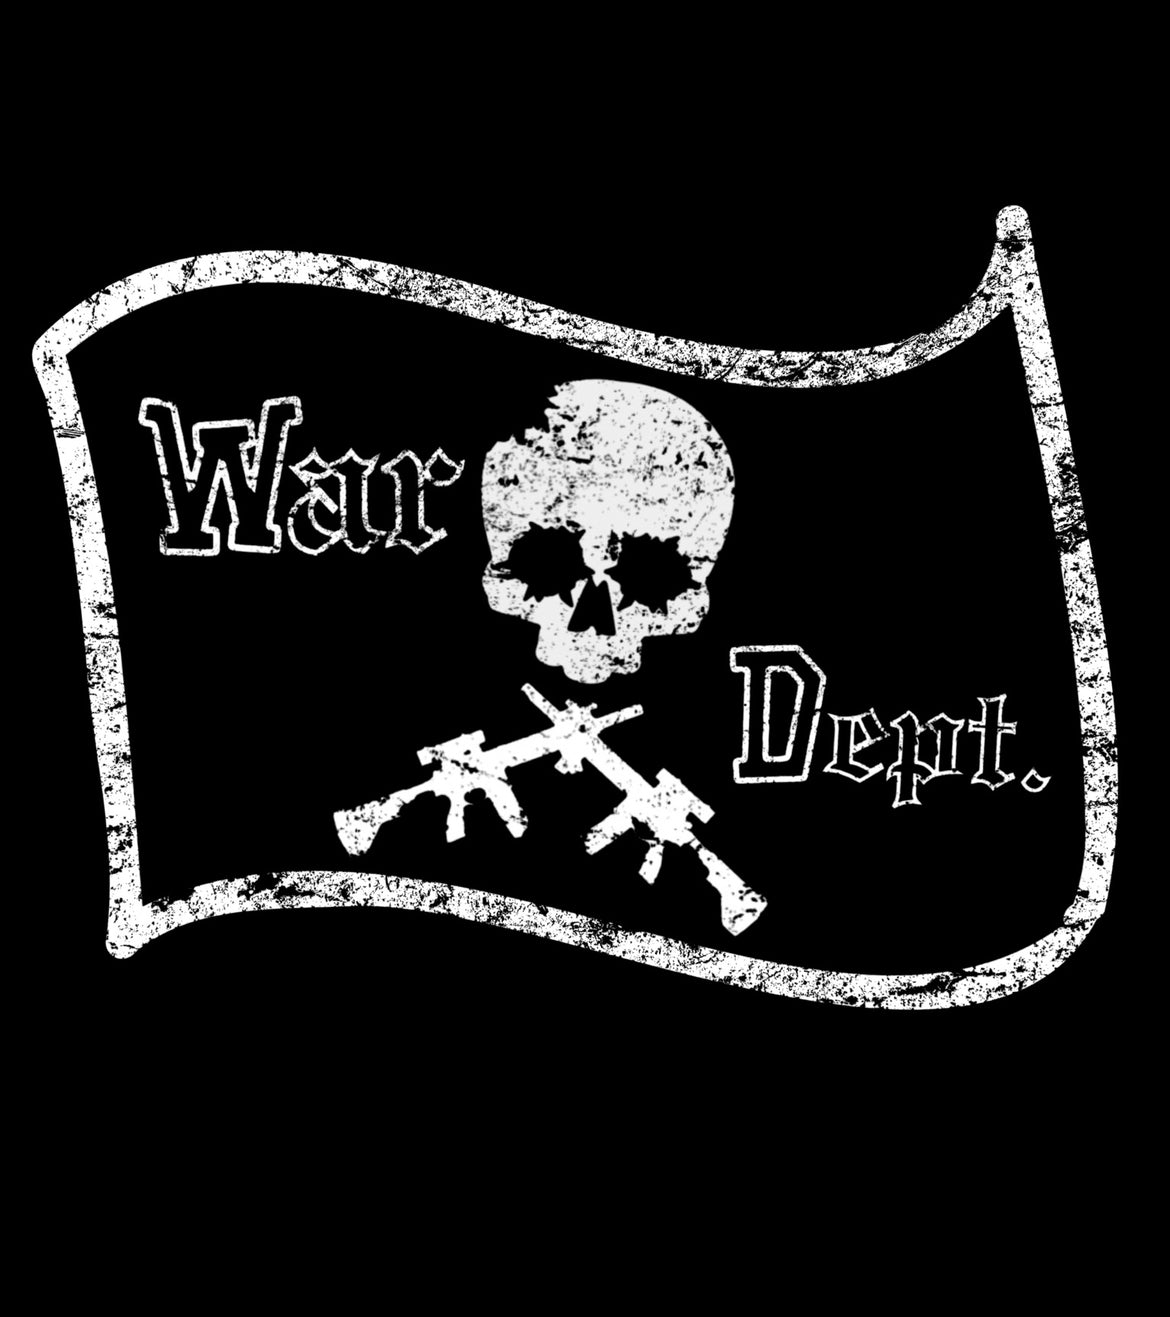 War Dept. Pirate Tee